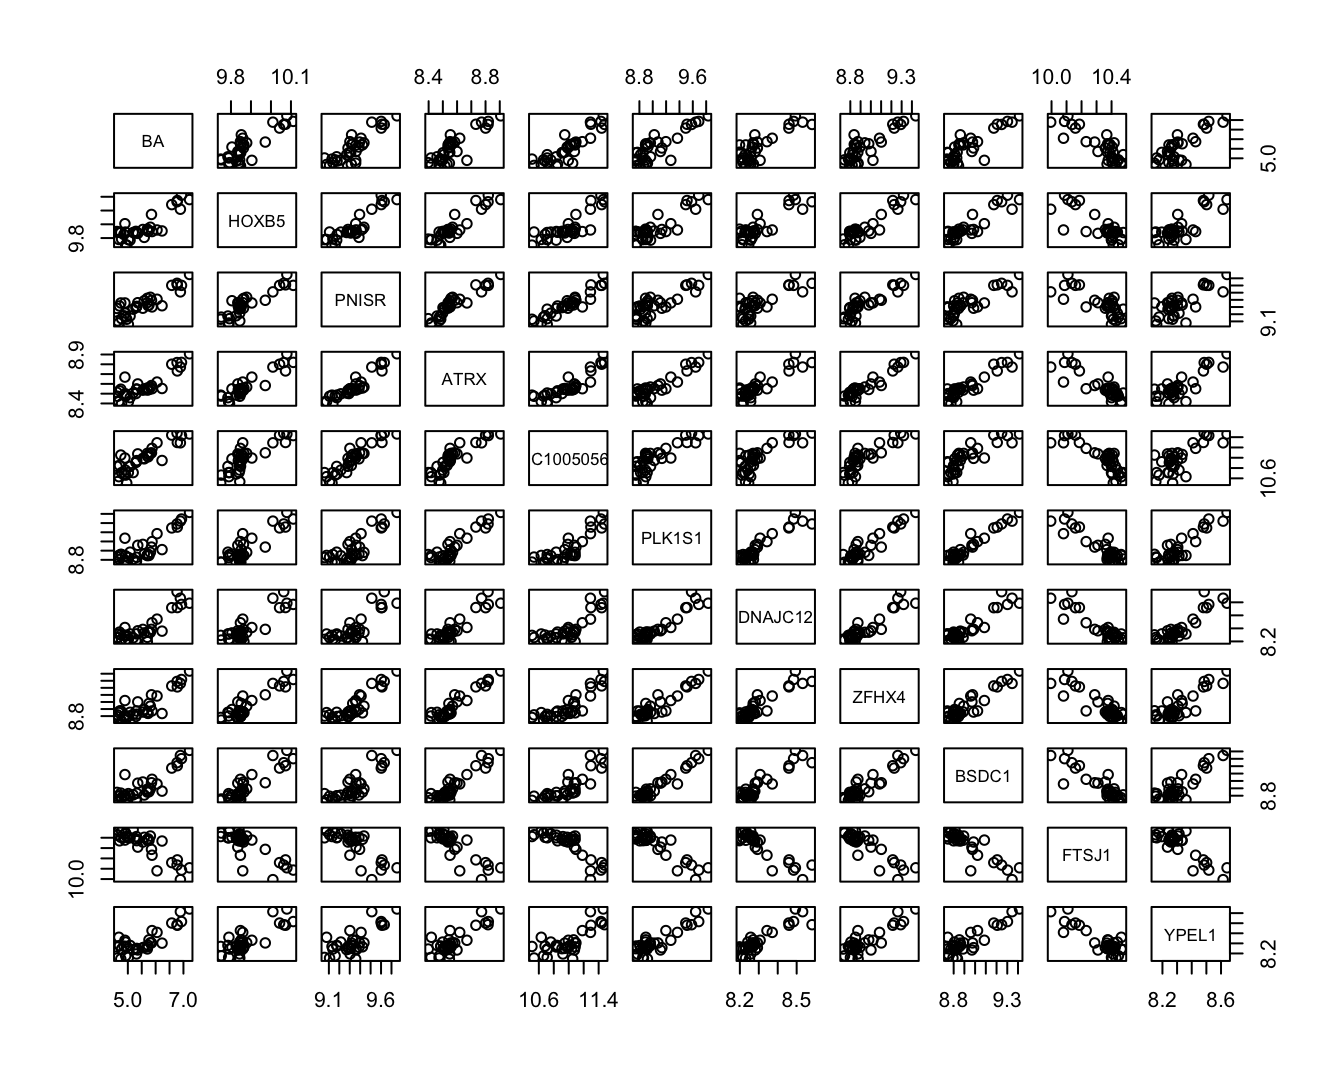 Scatterplot matrix voor de observaties in de bioactiviteit dataset.